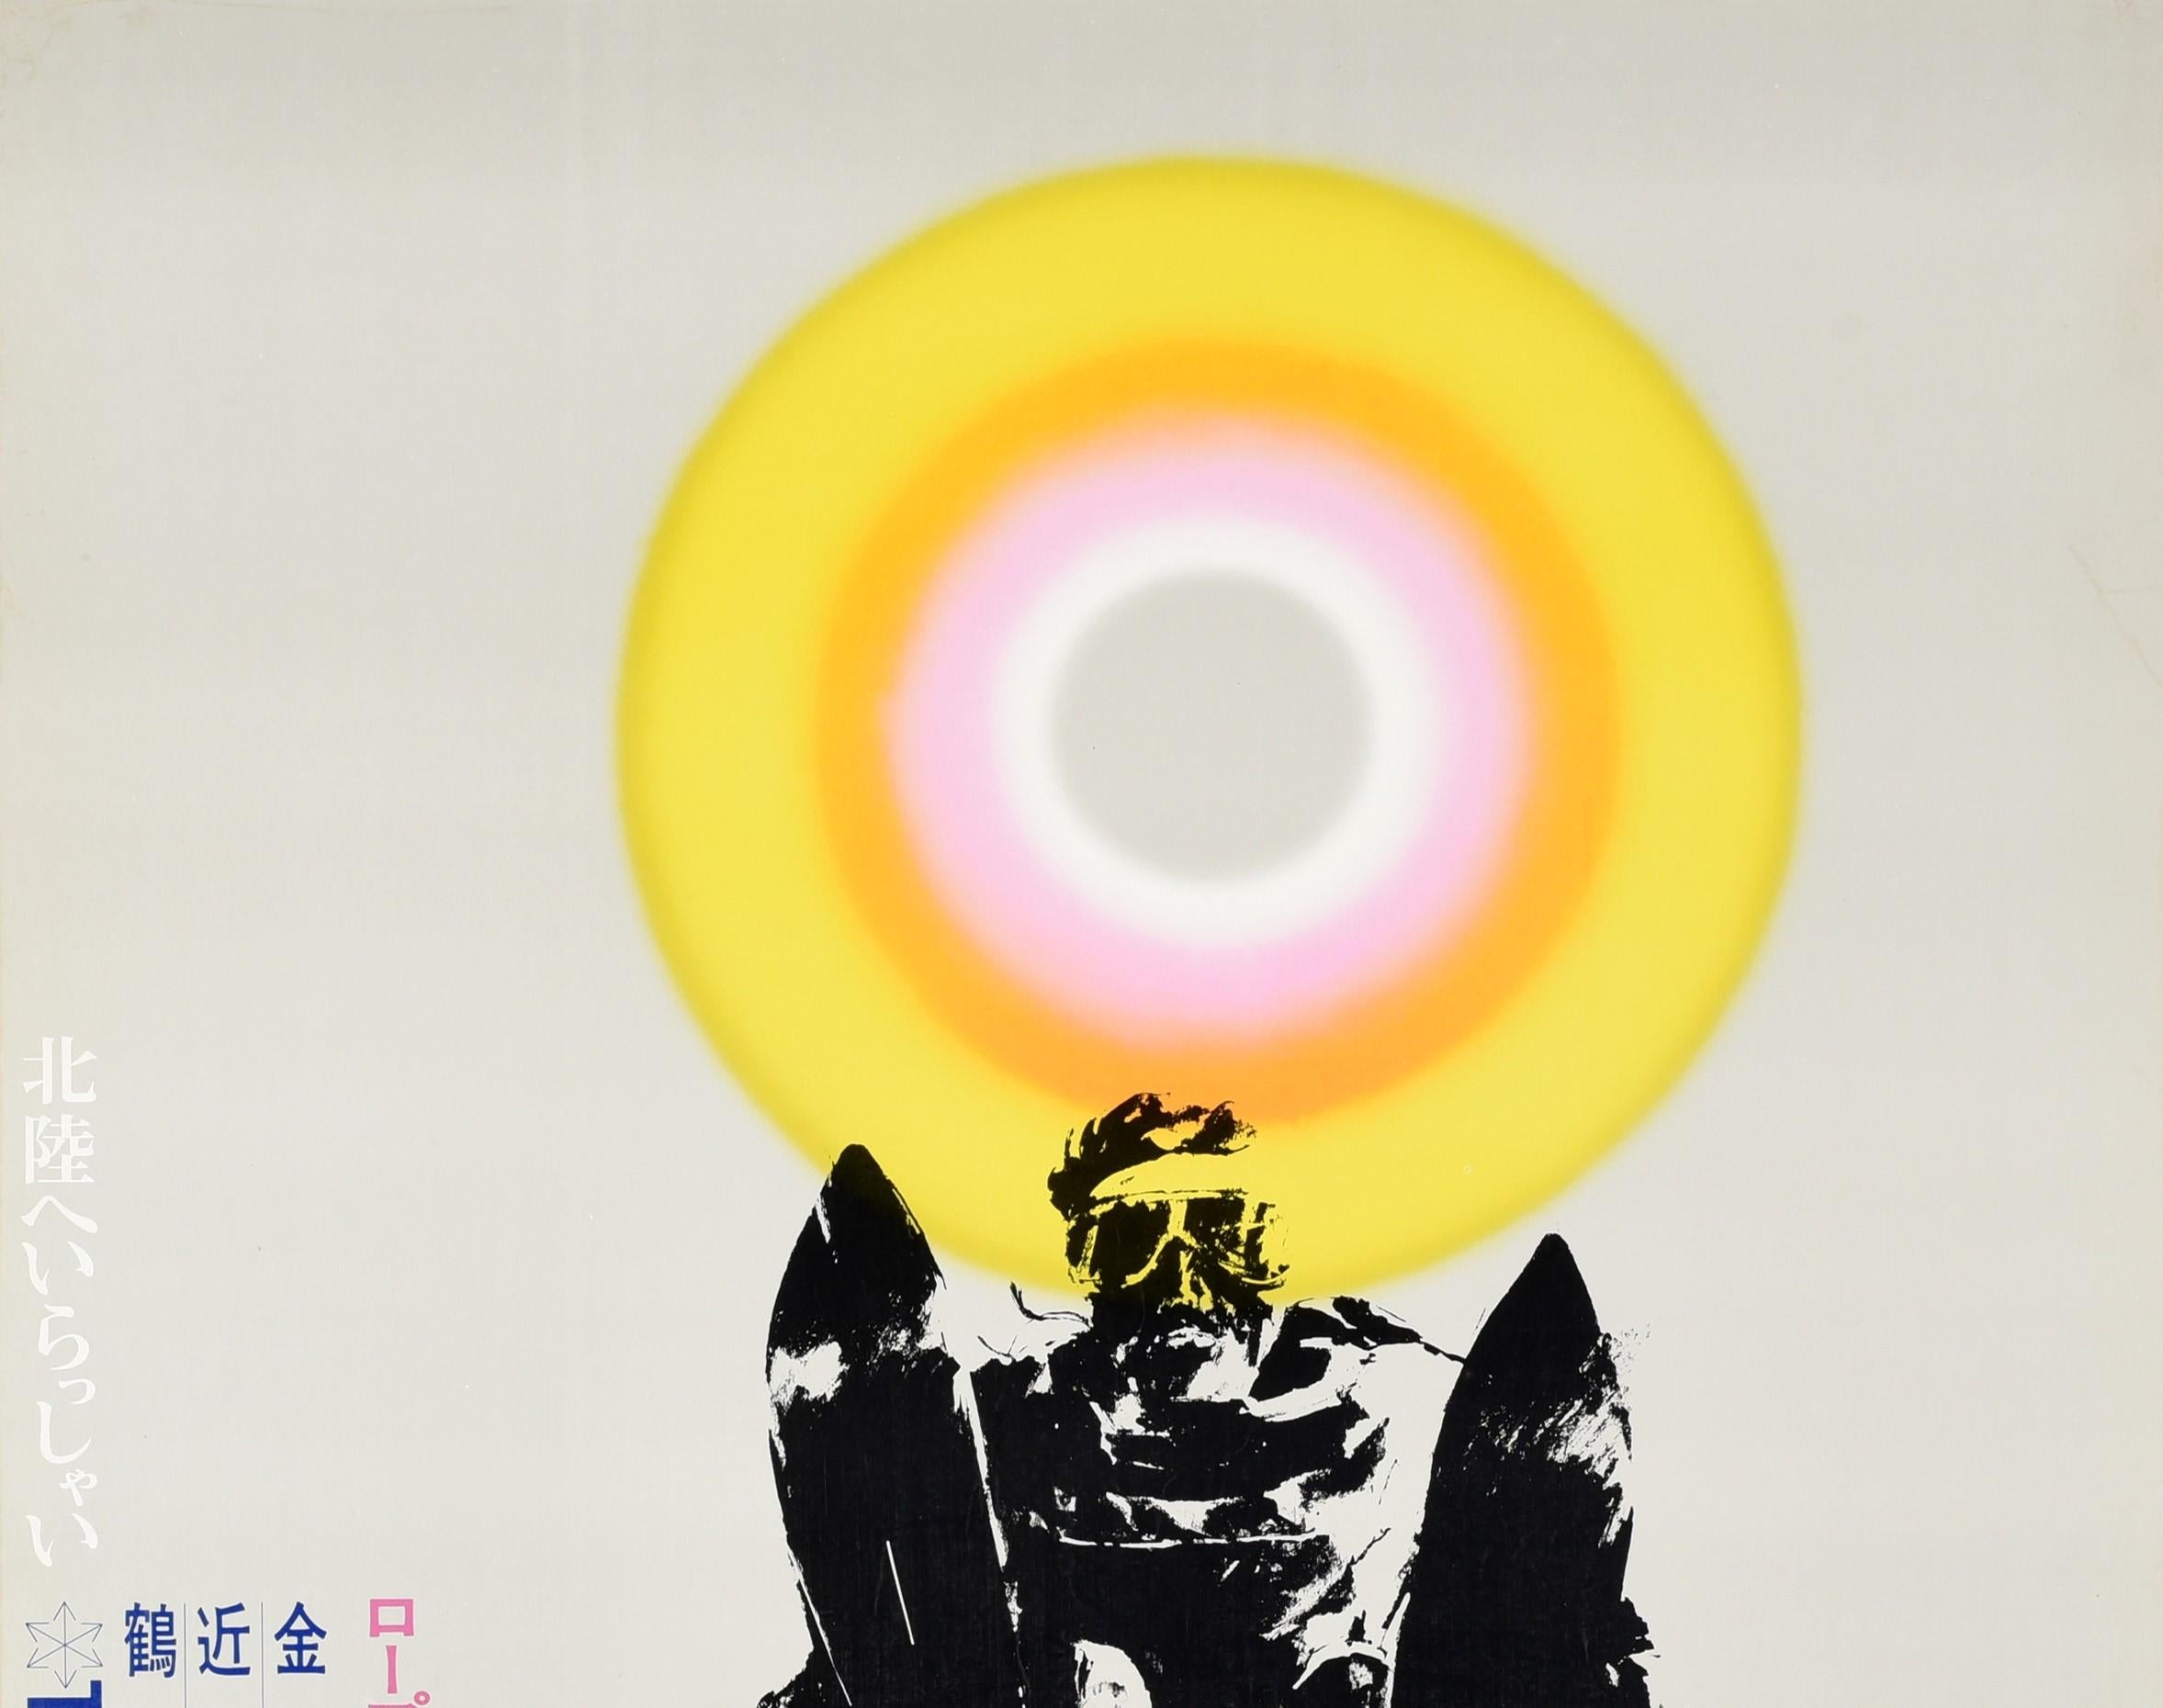 Affiche originale de voyage de ski vintage pour le Tsurugi Shishiku Highland présentant une image dynamique d'un skieur en noir devant un soleil coloré gris, blanc, rose, orange et jaune en arrière-plan, le texte du titre en gras sur le côté avec